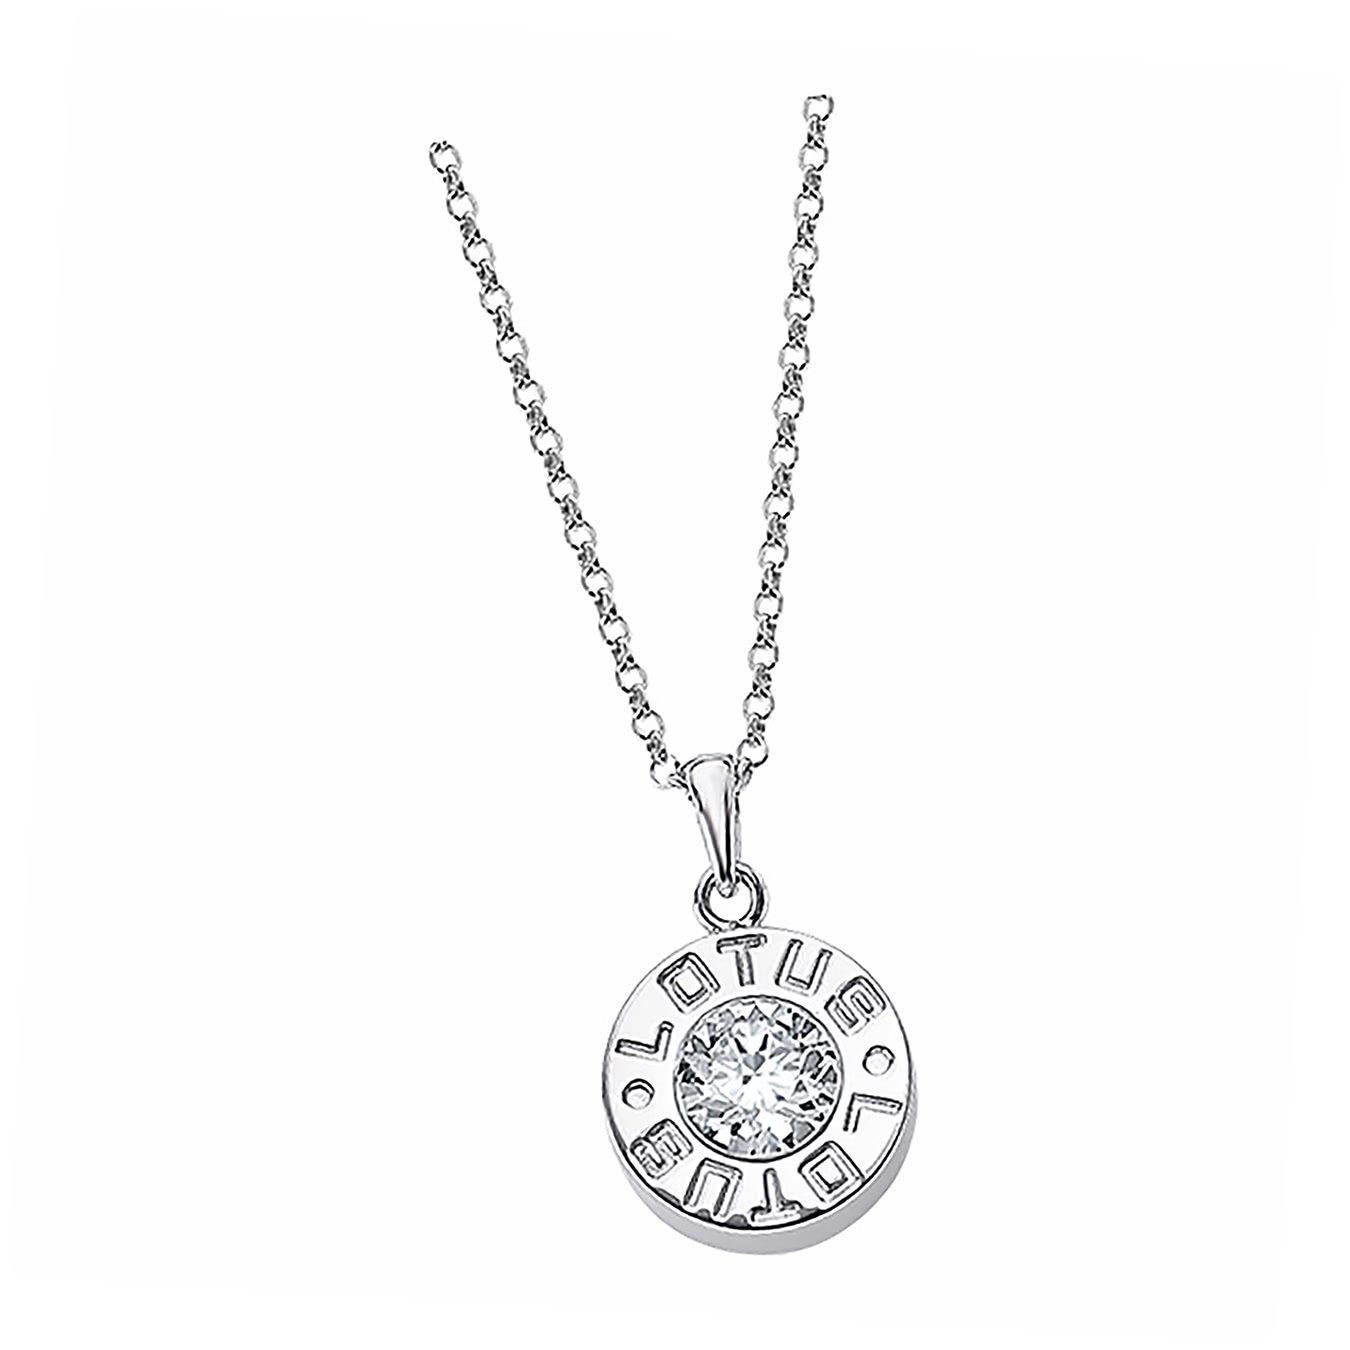 LOTUS SILVER Silberkette Lotus Silver Lotus Halskette (Halskette), Ожерелья für Damen 925 Sterling Silber, silber, weiß